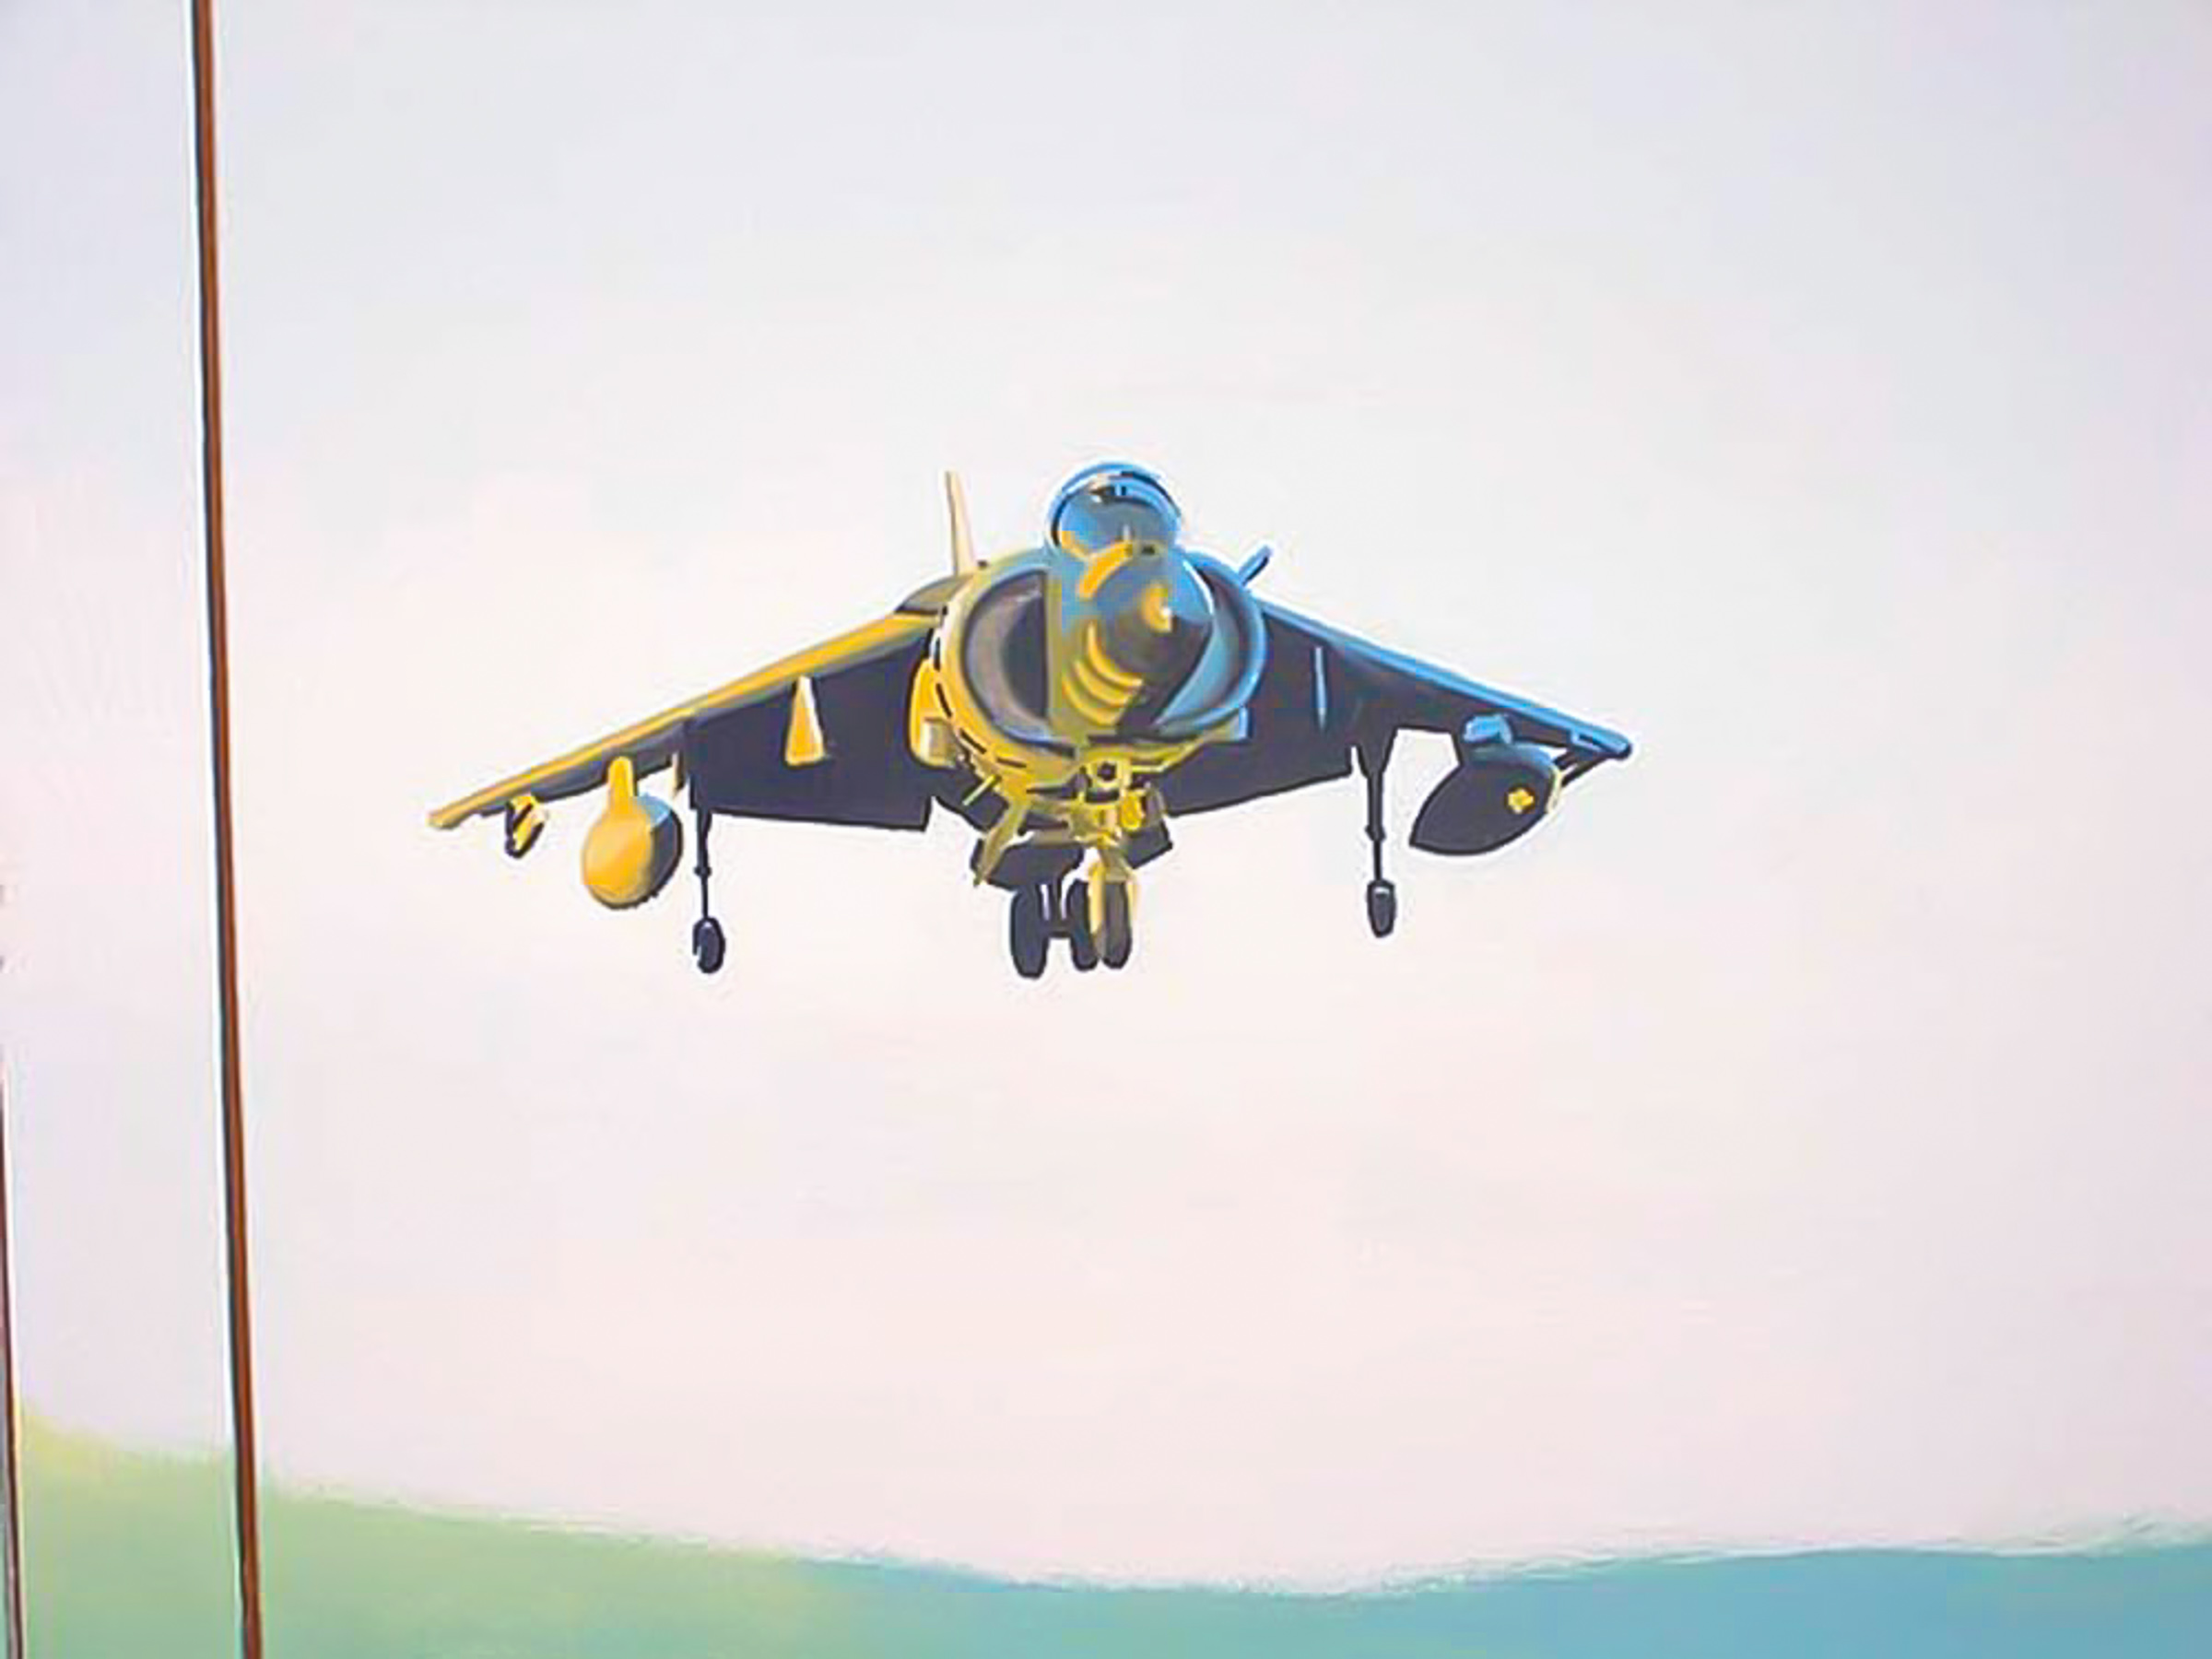 Harrier jump jet in boy's bedroom mural